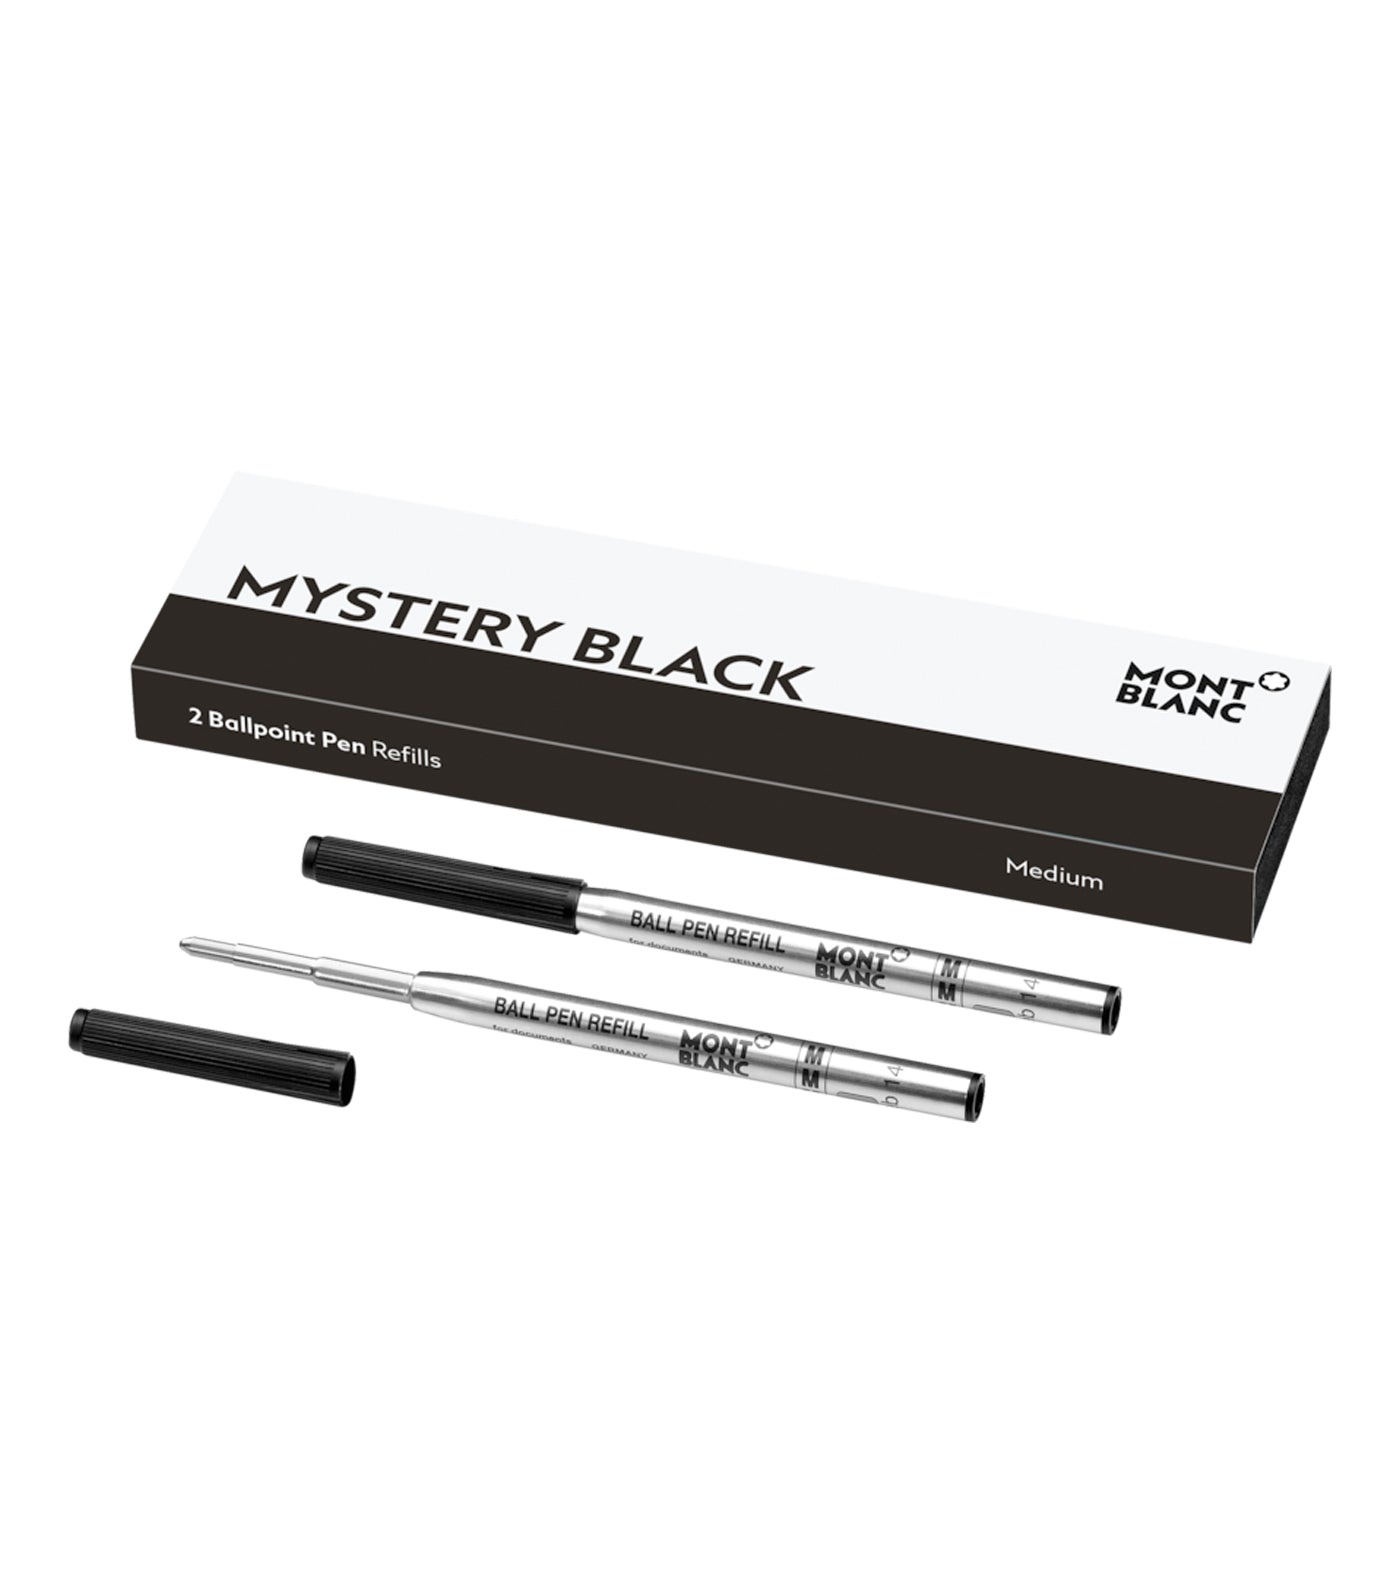 2 Ballpoint Pen Refill Medium Mystery Black